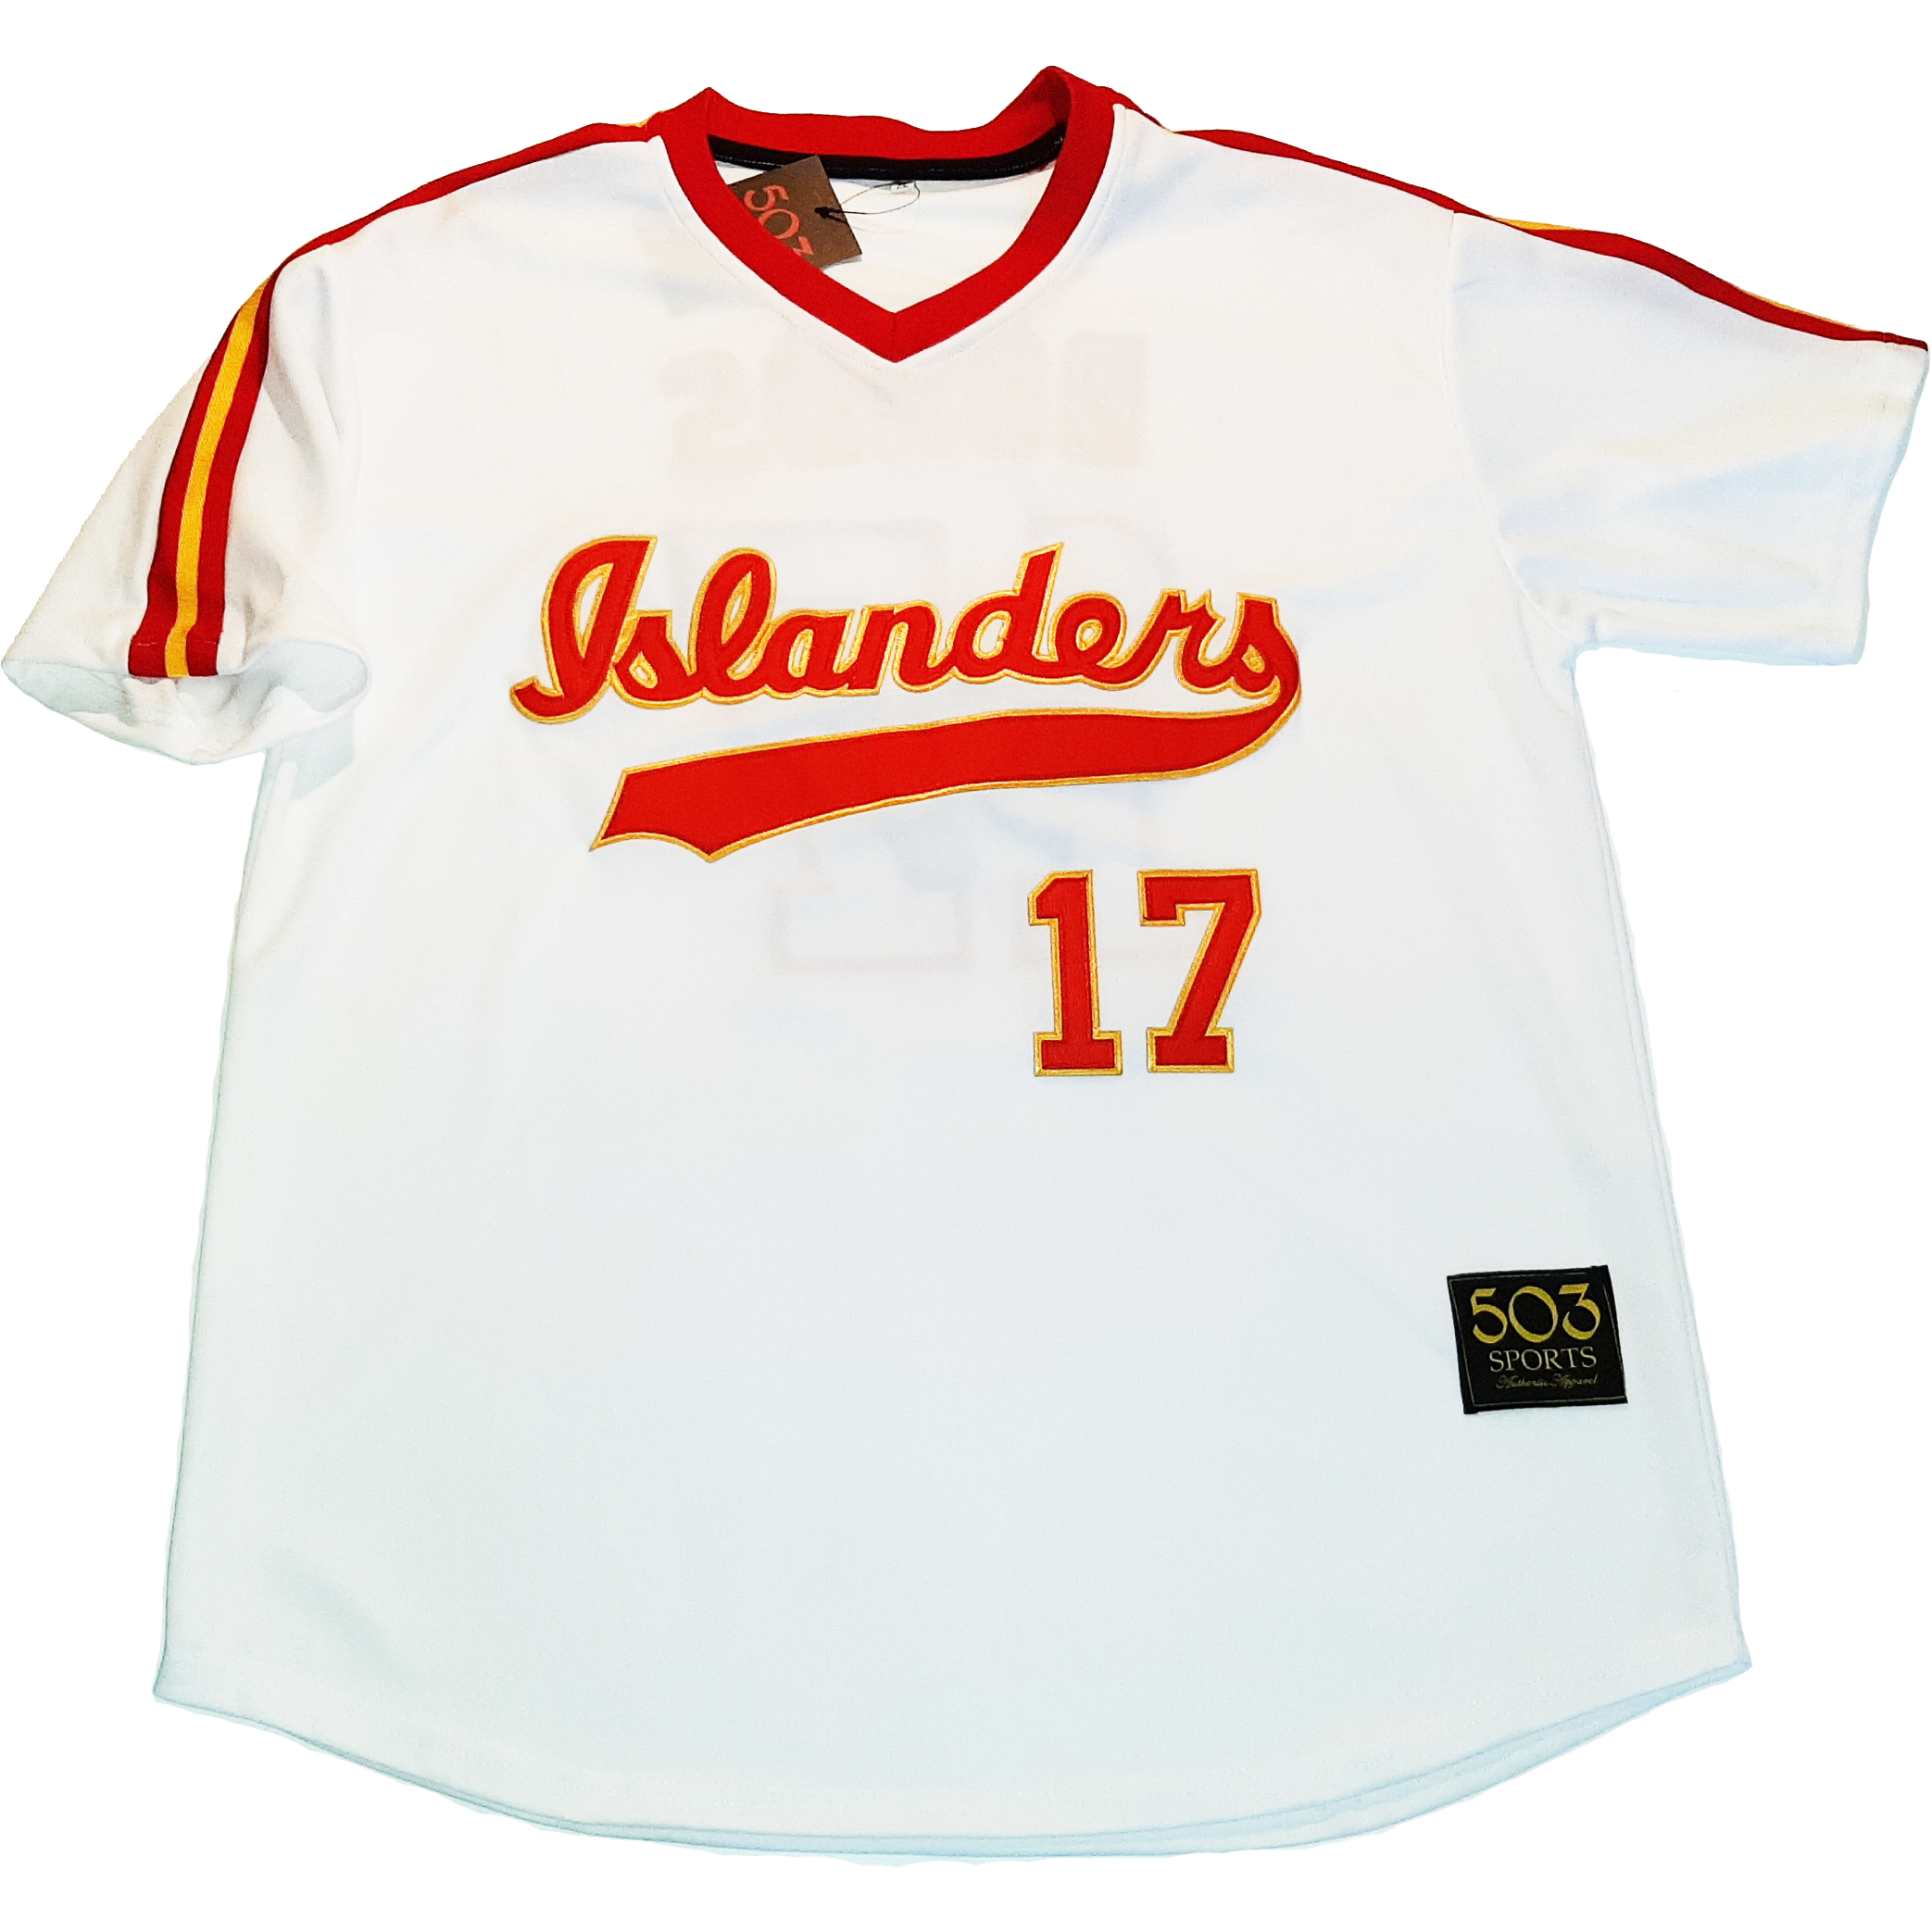 university of hawaii baseball jersey